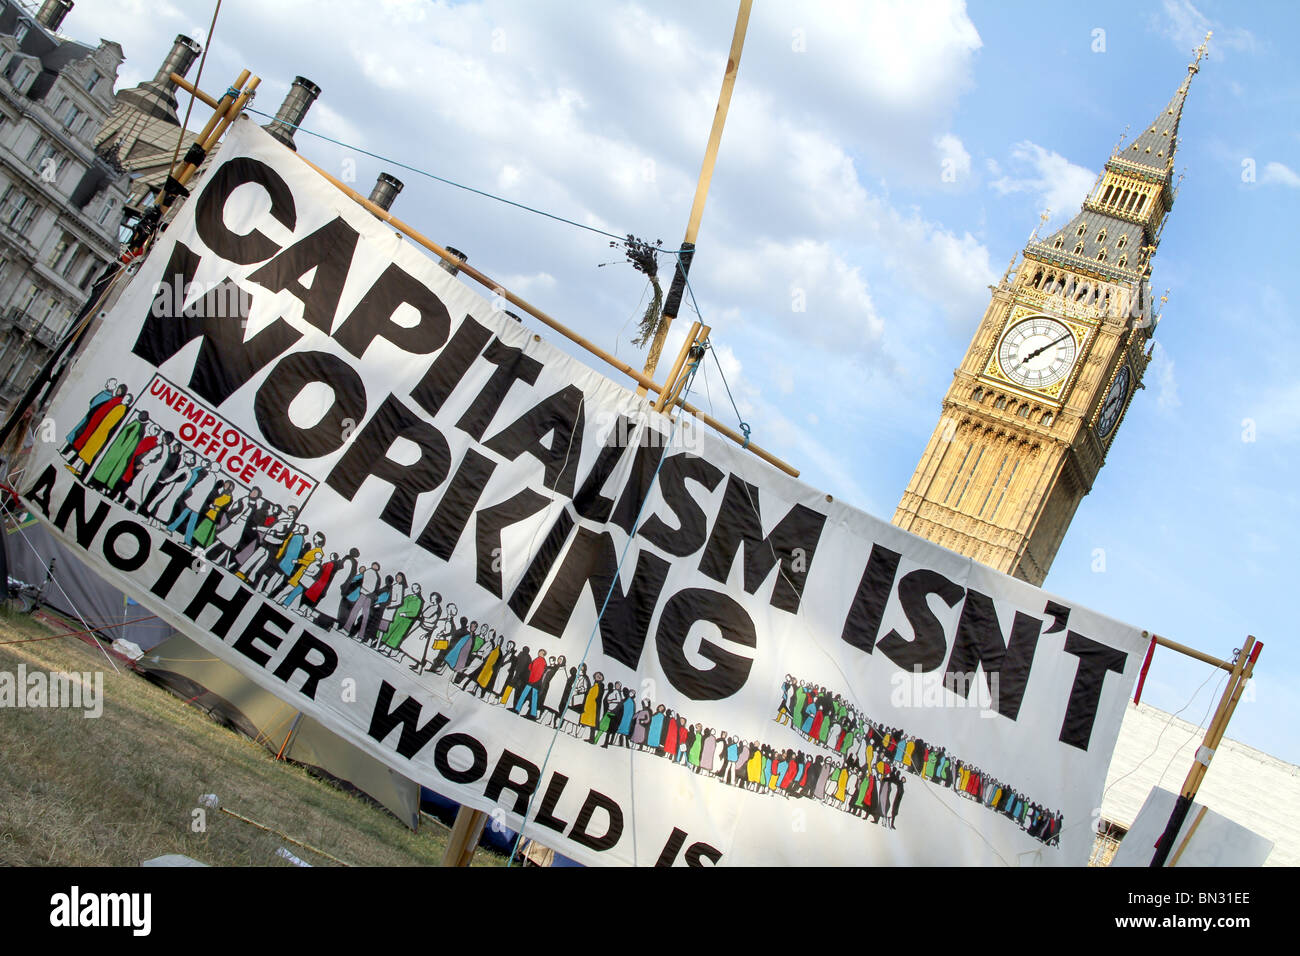 La place du Parlement et Big Ben du Camp de la paix avec le Capitalisme contre capitalisme, bannière de démonstration ne fonctionne pas, Londres, Angleterre Banque D'Images